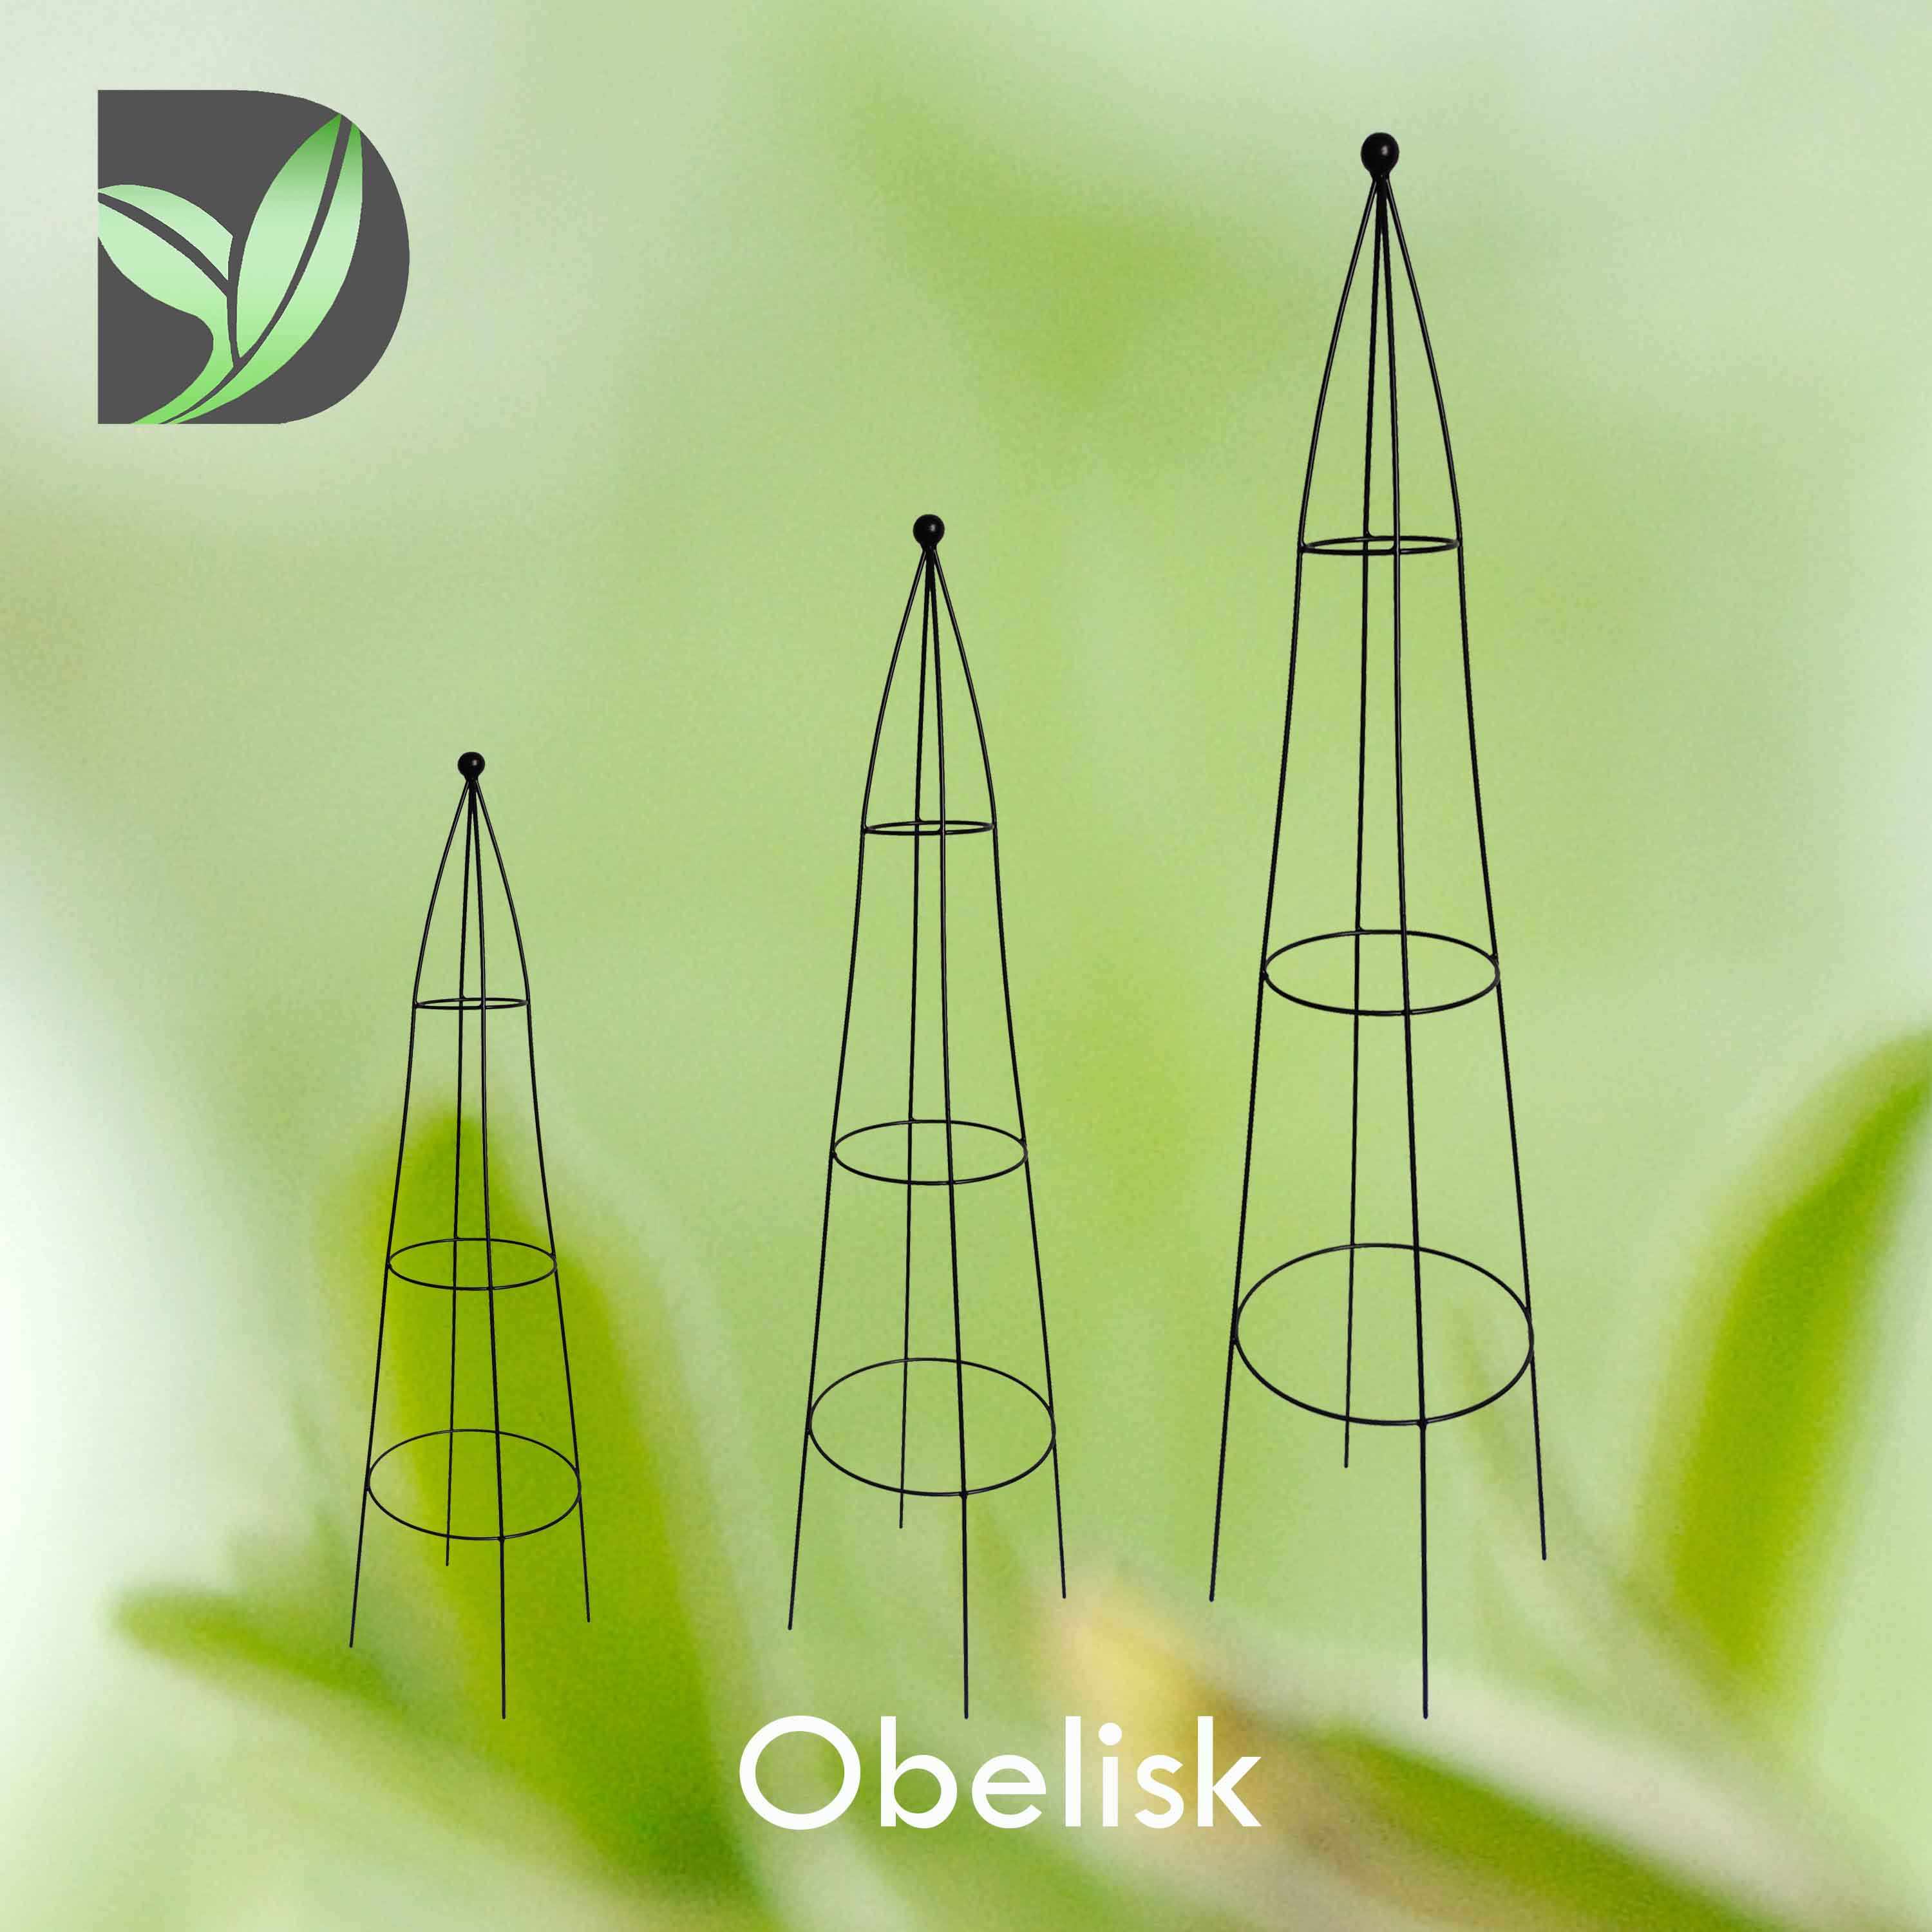 Traditional Obelisk